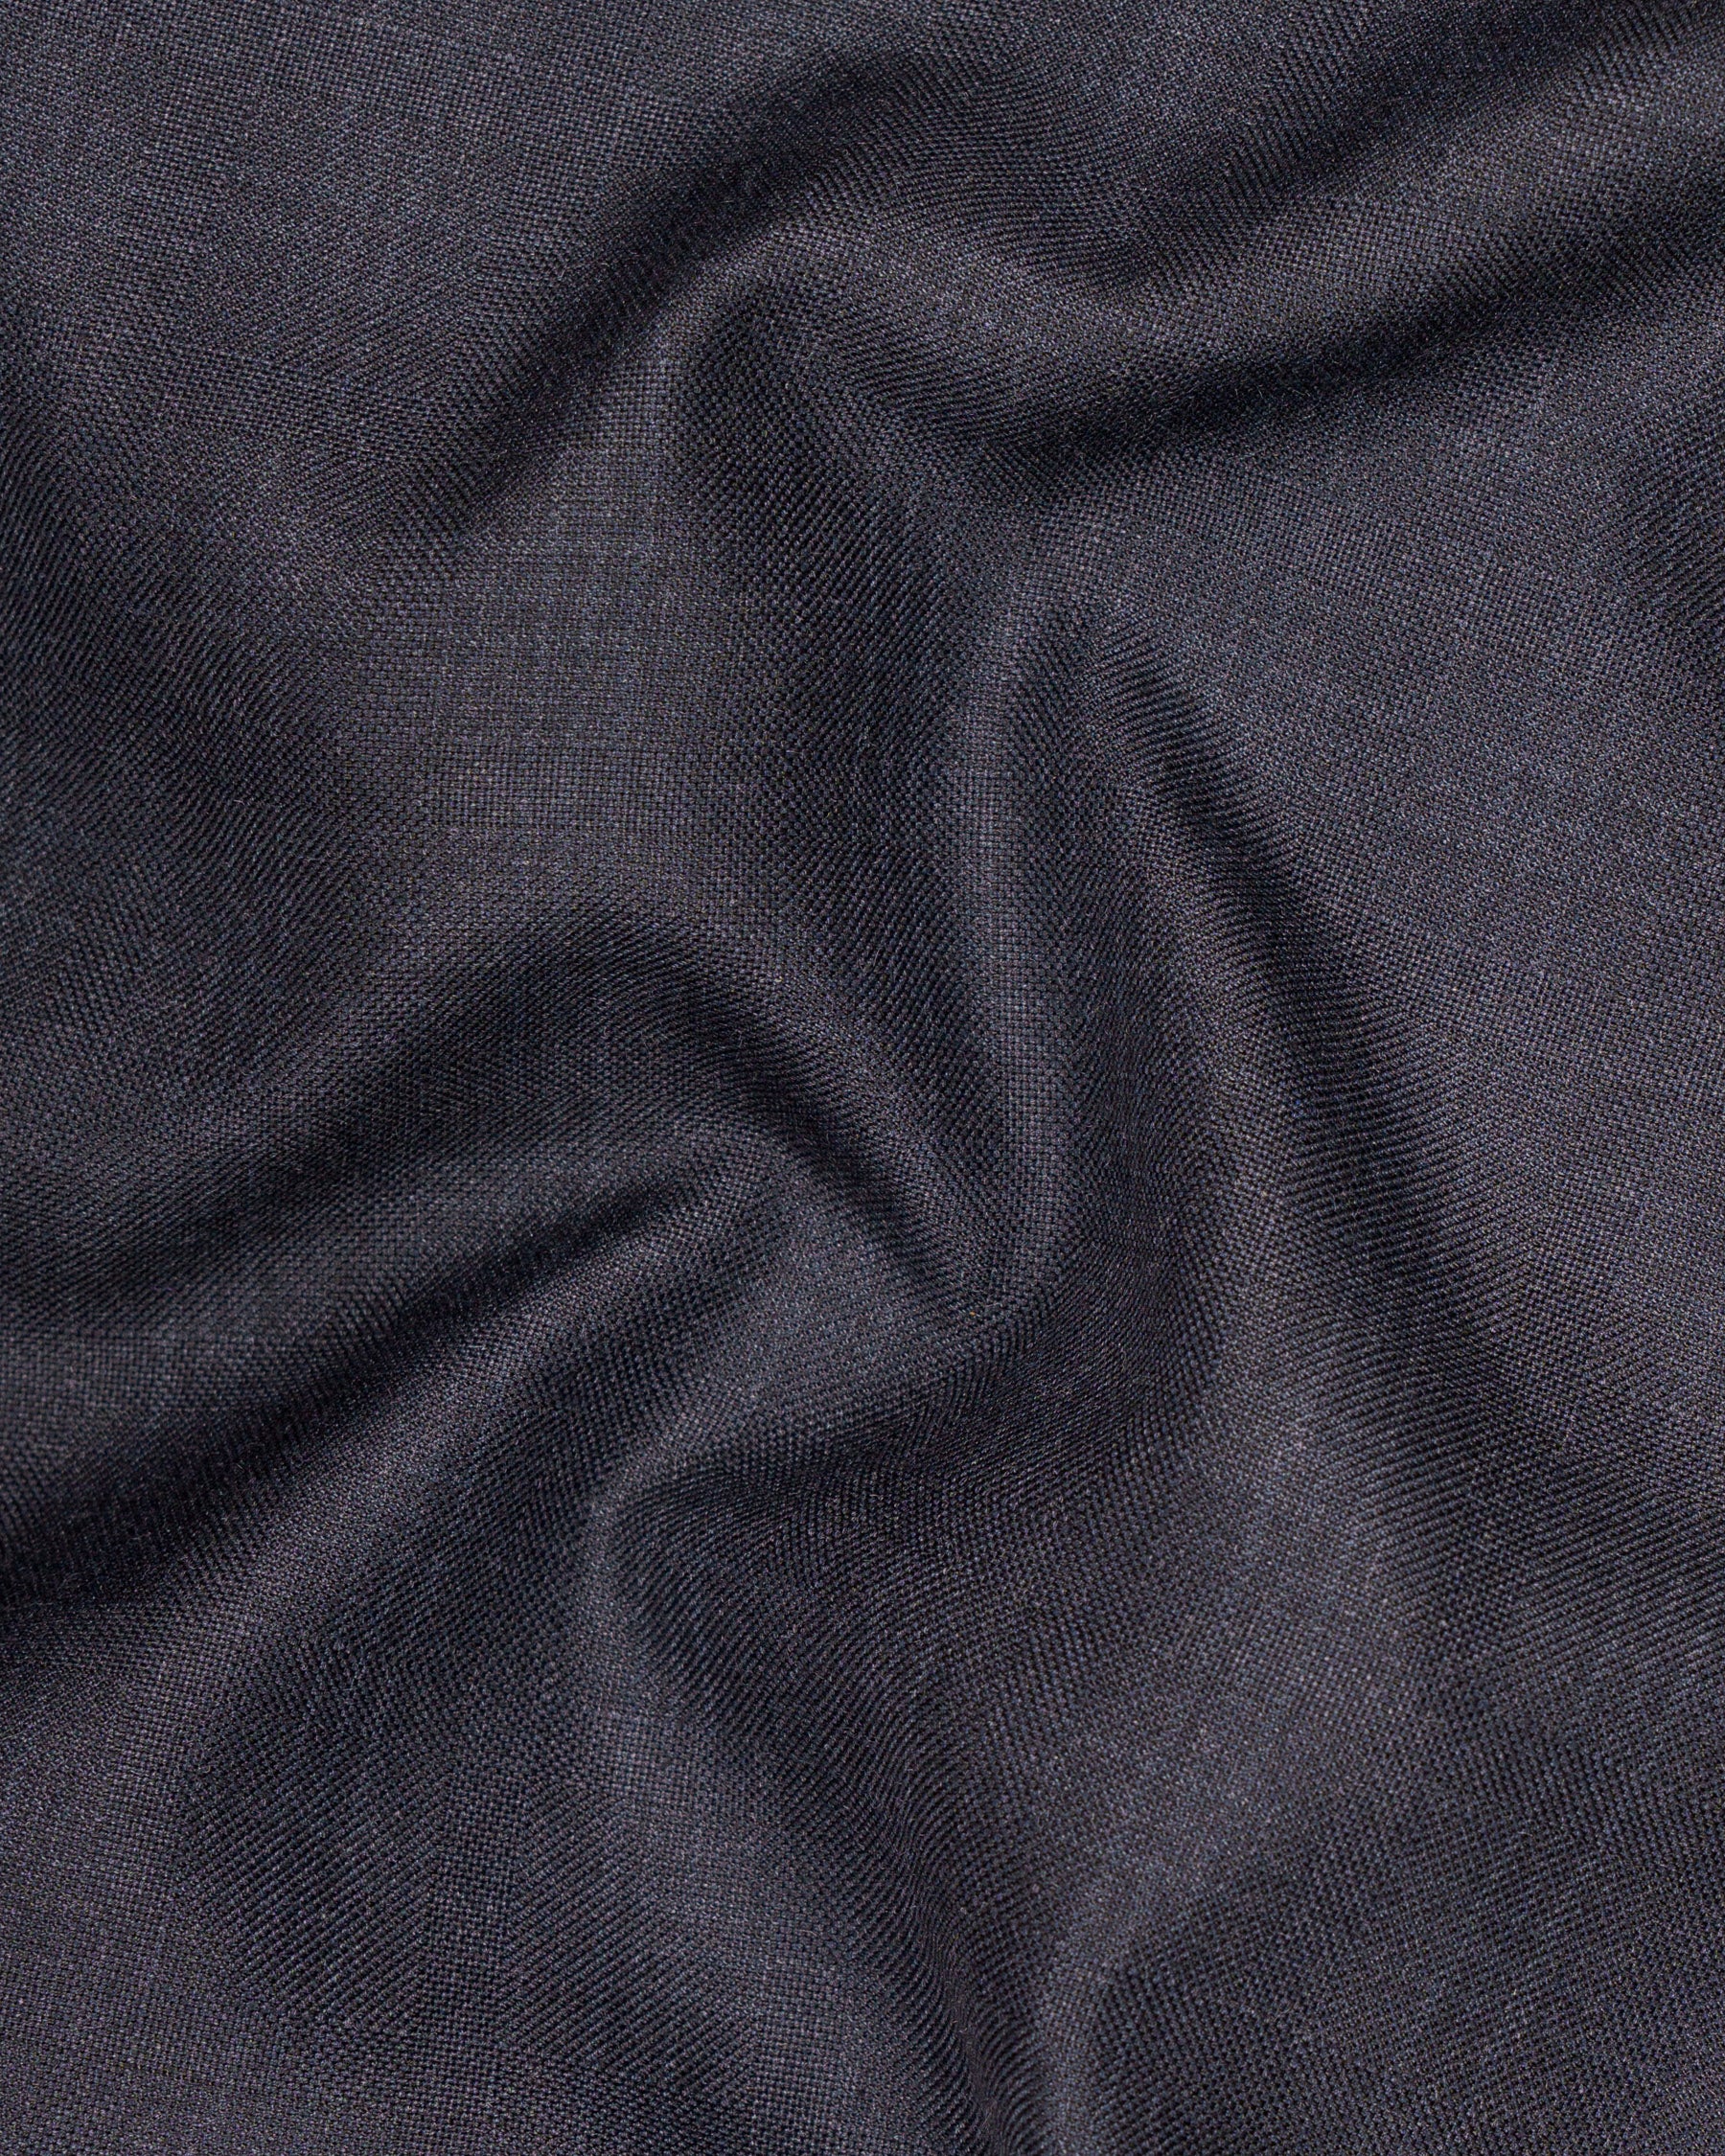 Gravel Grey Subtle Plaid Wool Rich Waistcoat V1567-36, V1567-38, V1567-40, V1567-42, V1567-44, V1567-46, V1567-48, V1567-50, V1567-52, V1567-54, V1567-56, V1567-58, V1567-60